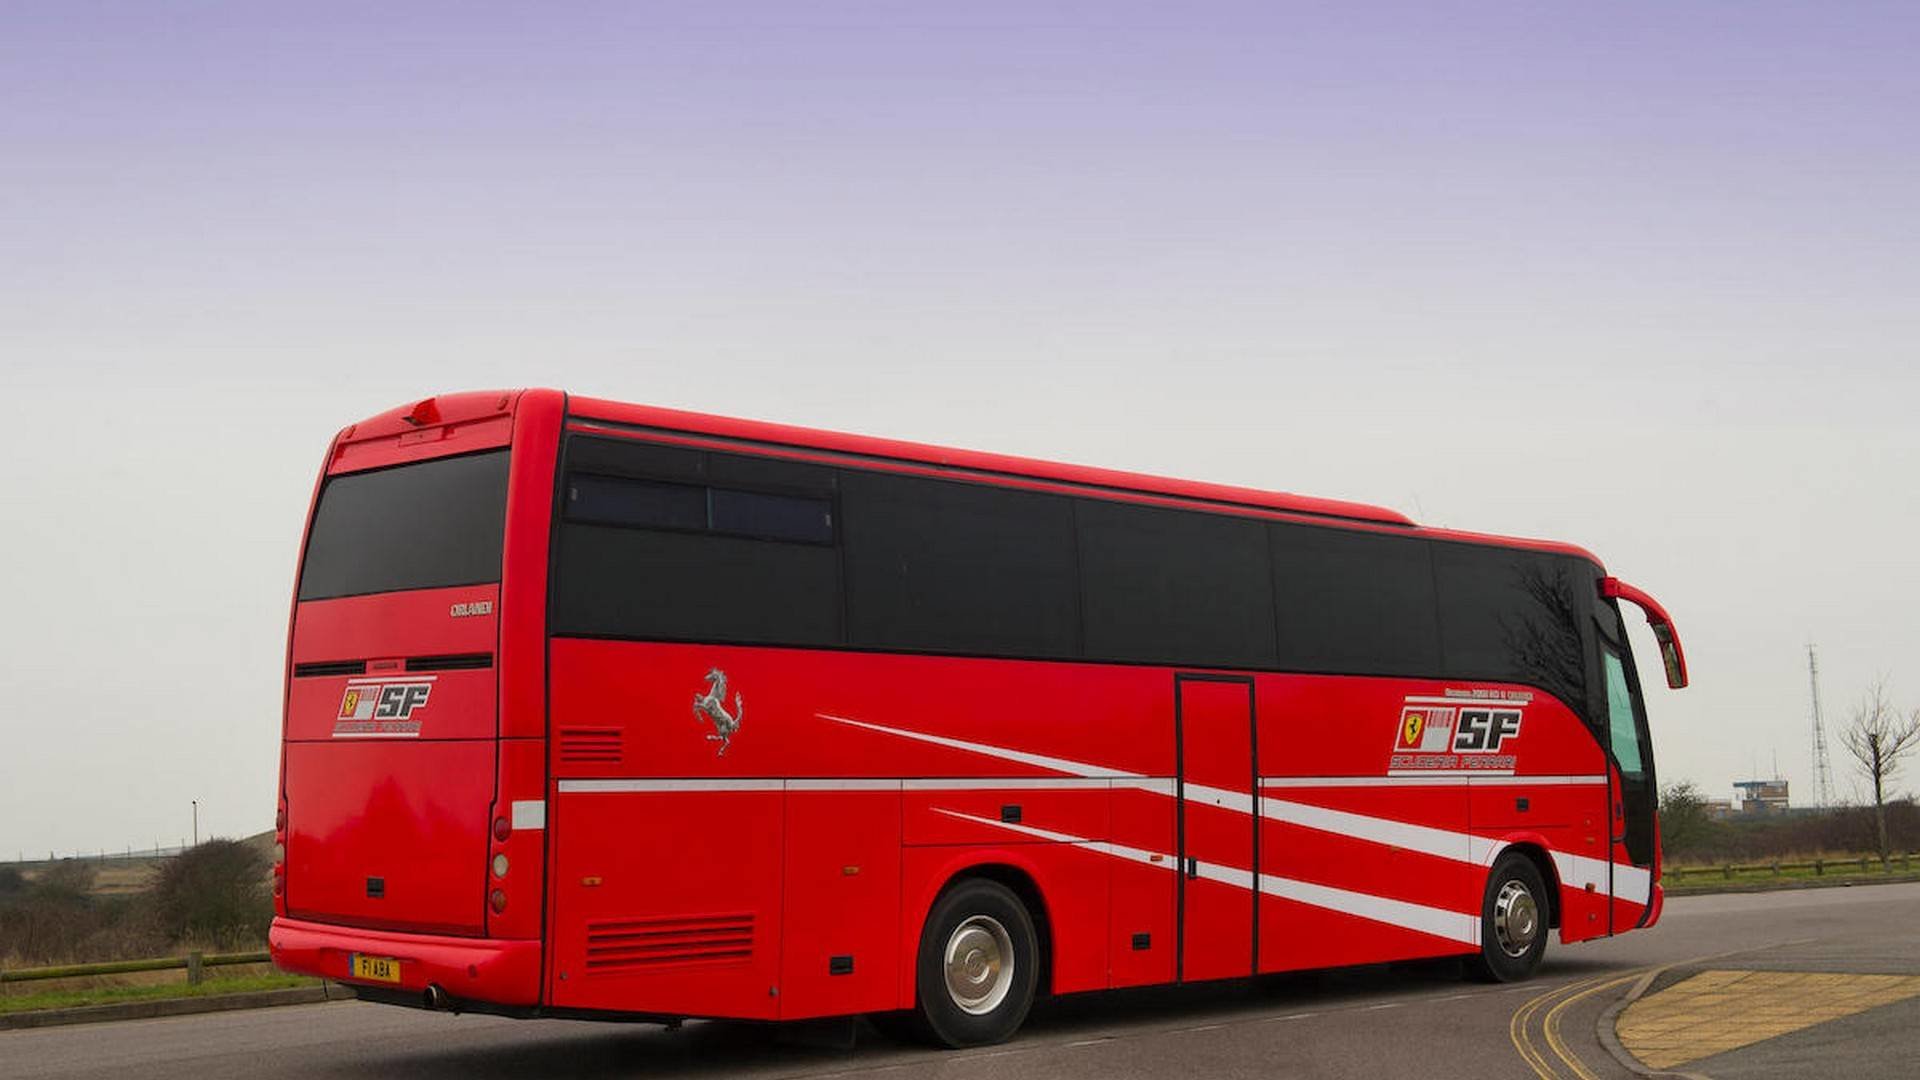 Autobus závodní stáje Ferrari, kterým cestoval i Michael Schumacher nebo Rubens Barrichello